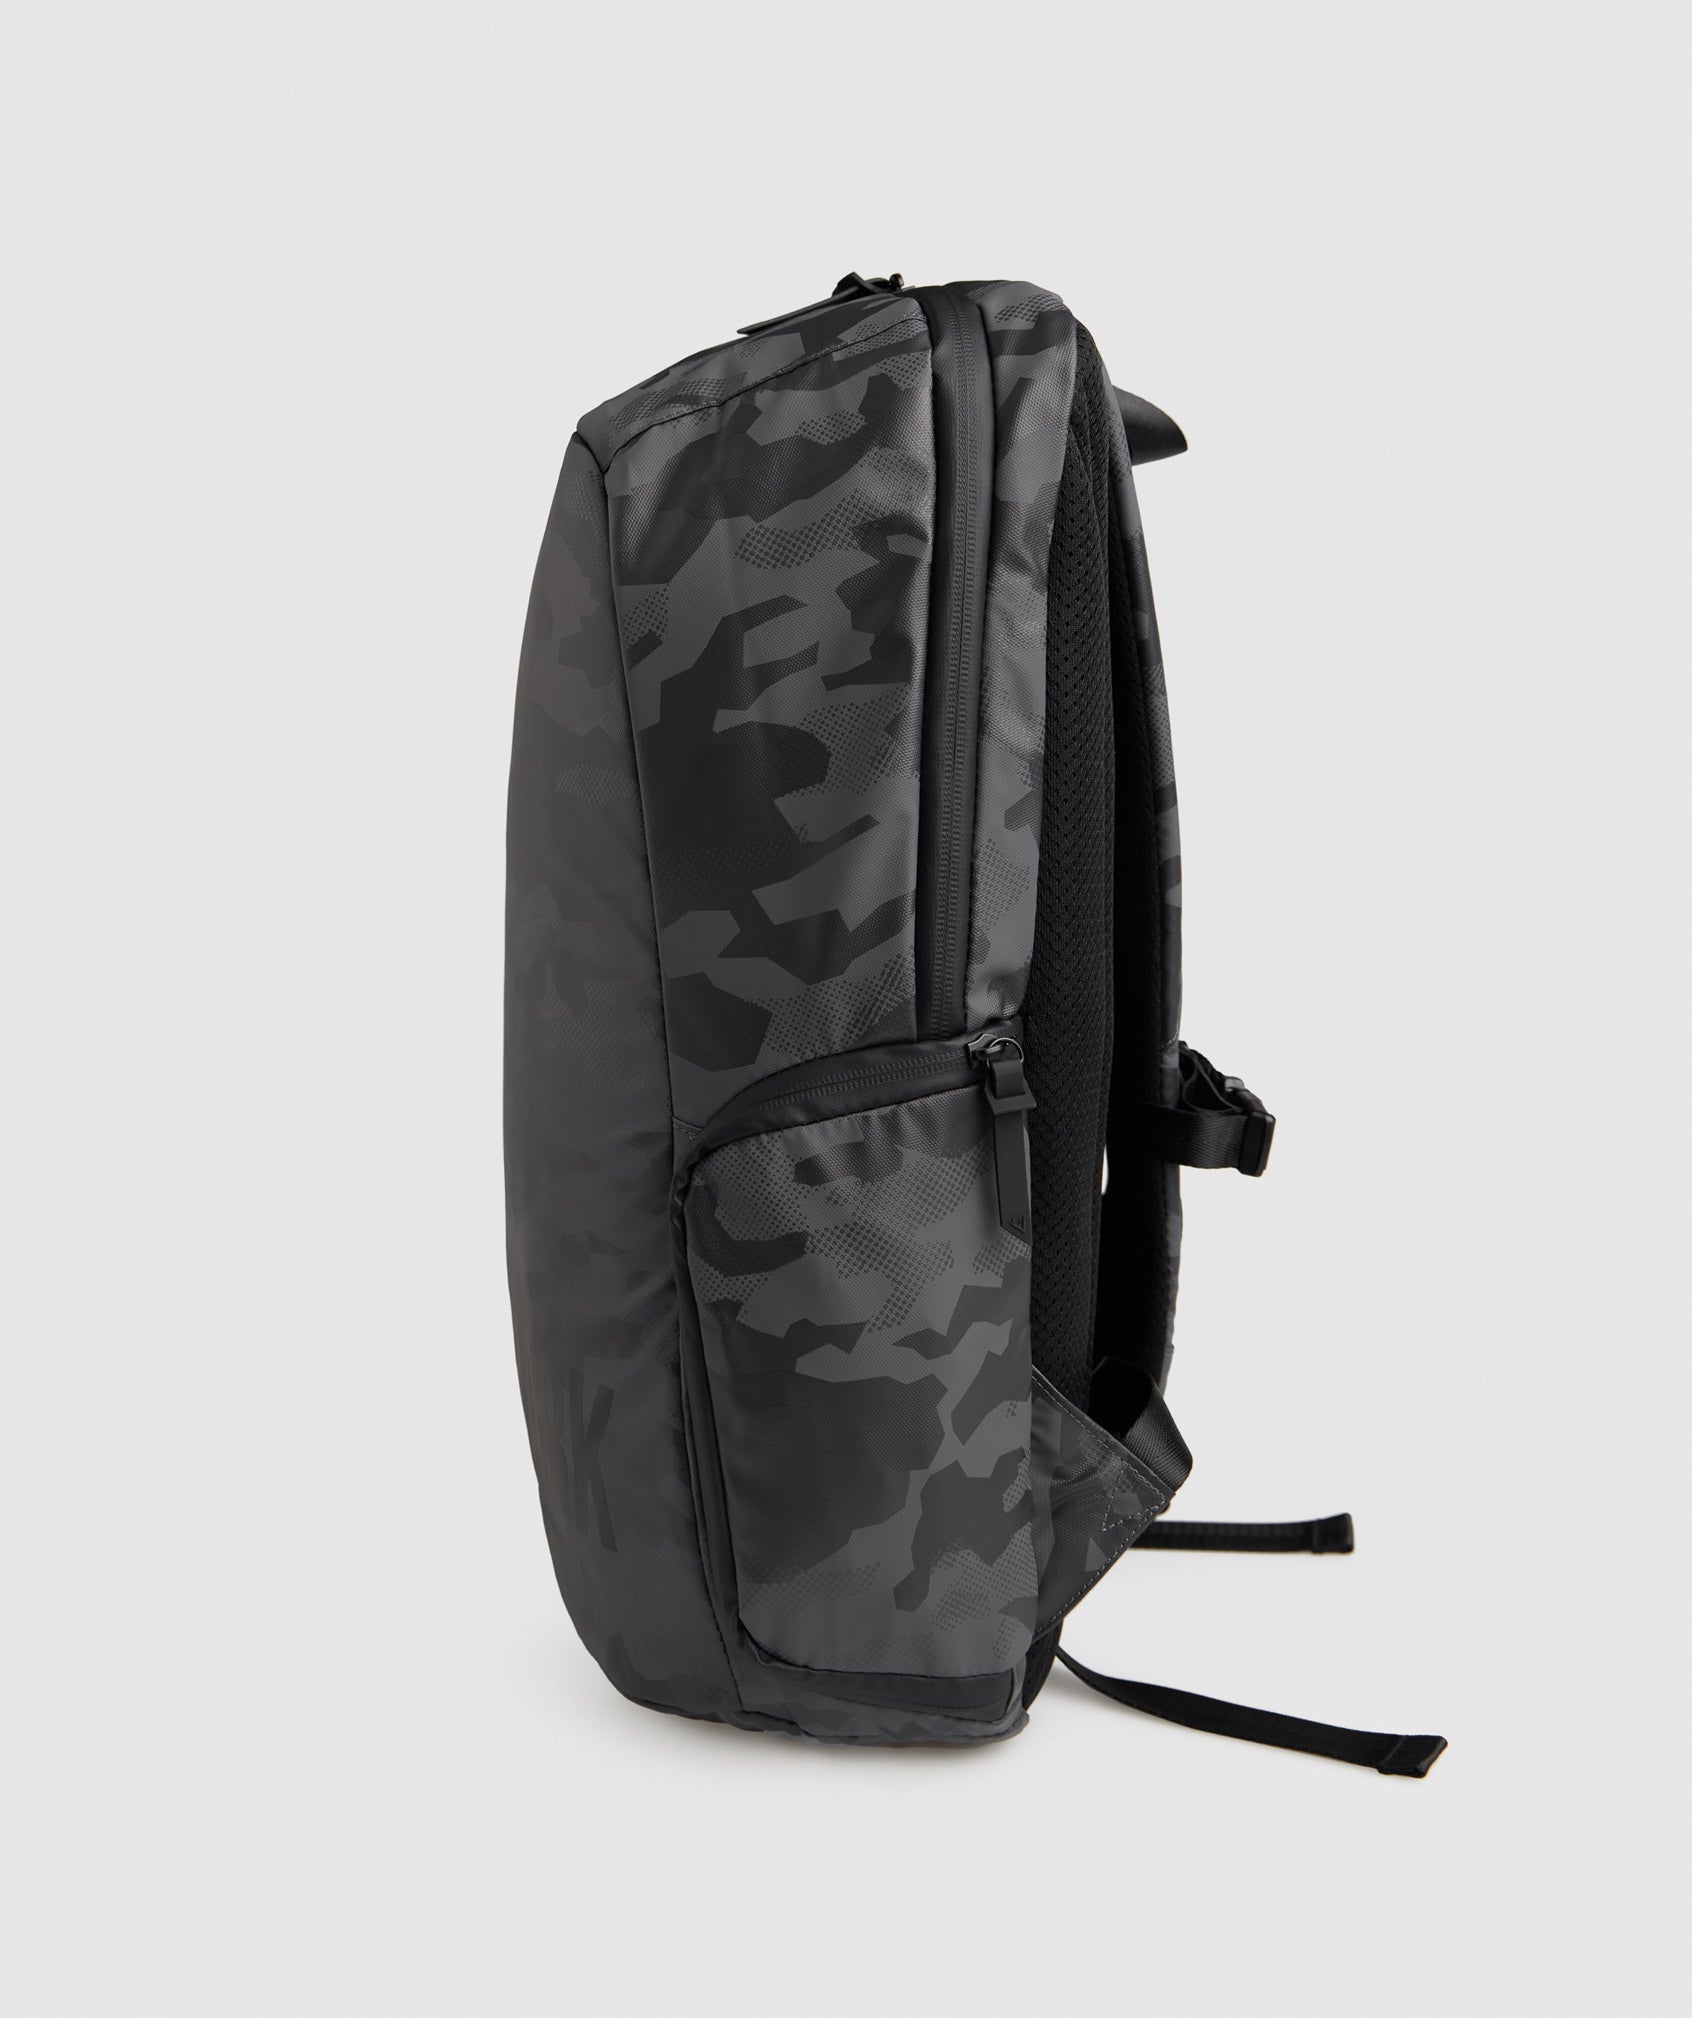  X-Series Backpack 0.1 in Black Print - view 4